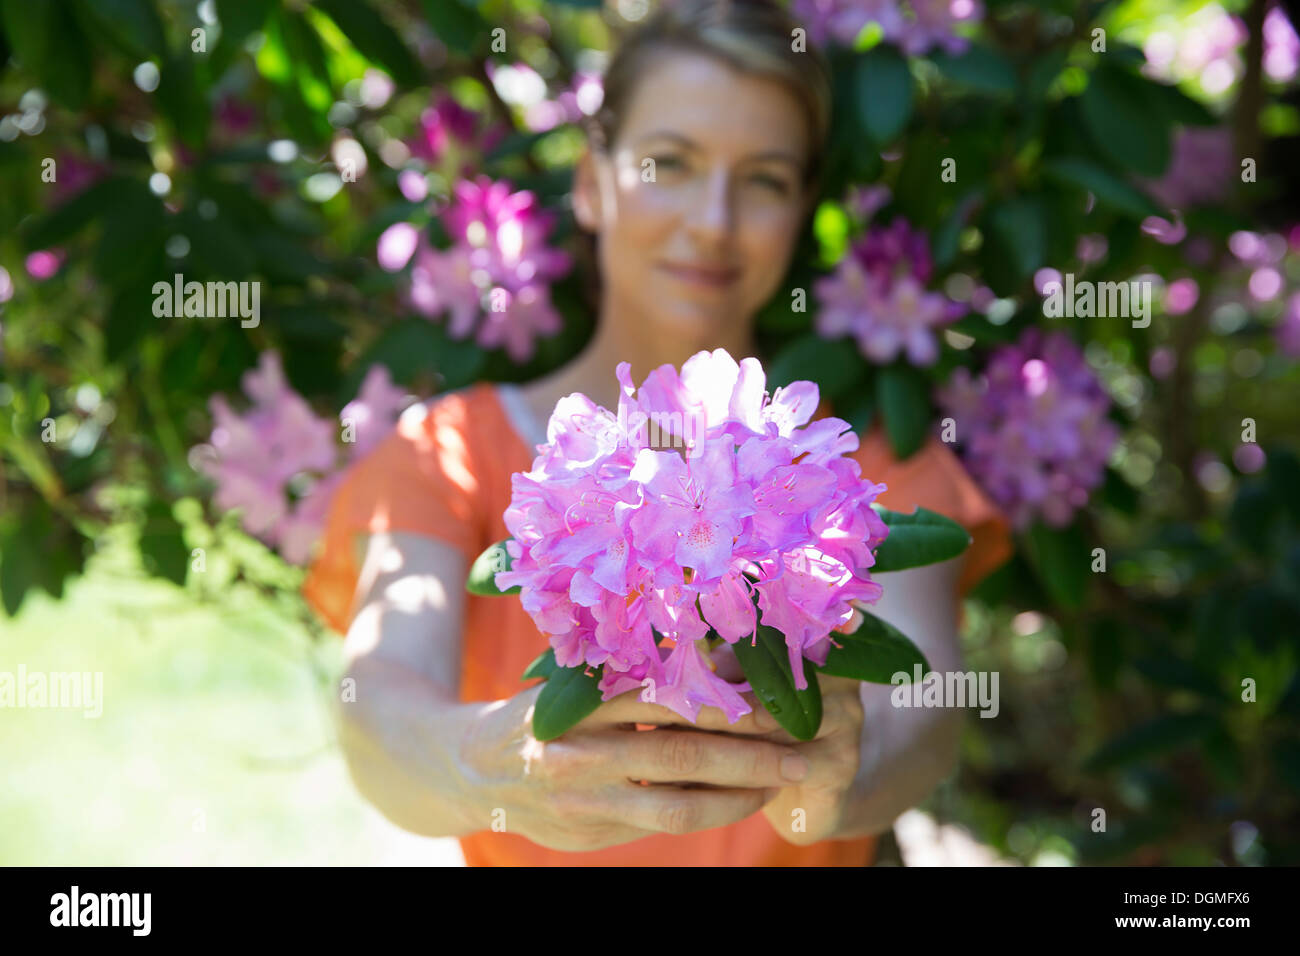 Eine Frau stand vor einem blühenden Strauch, hielt eine große lila Hortensien blühen. Stockfoto